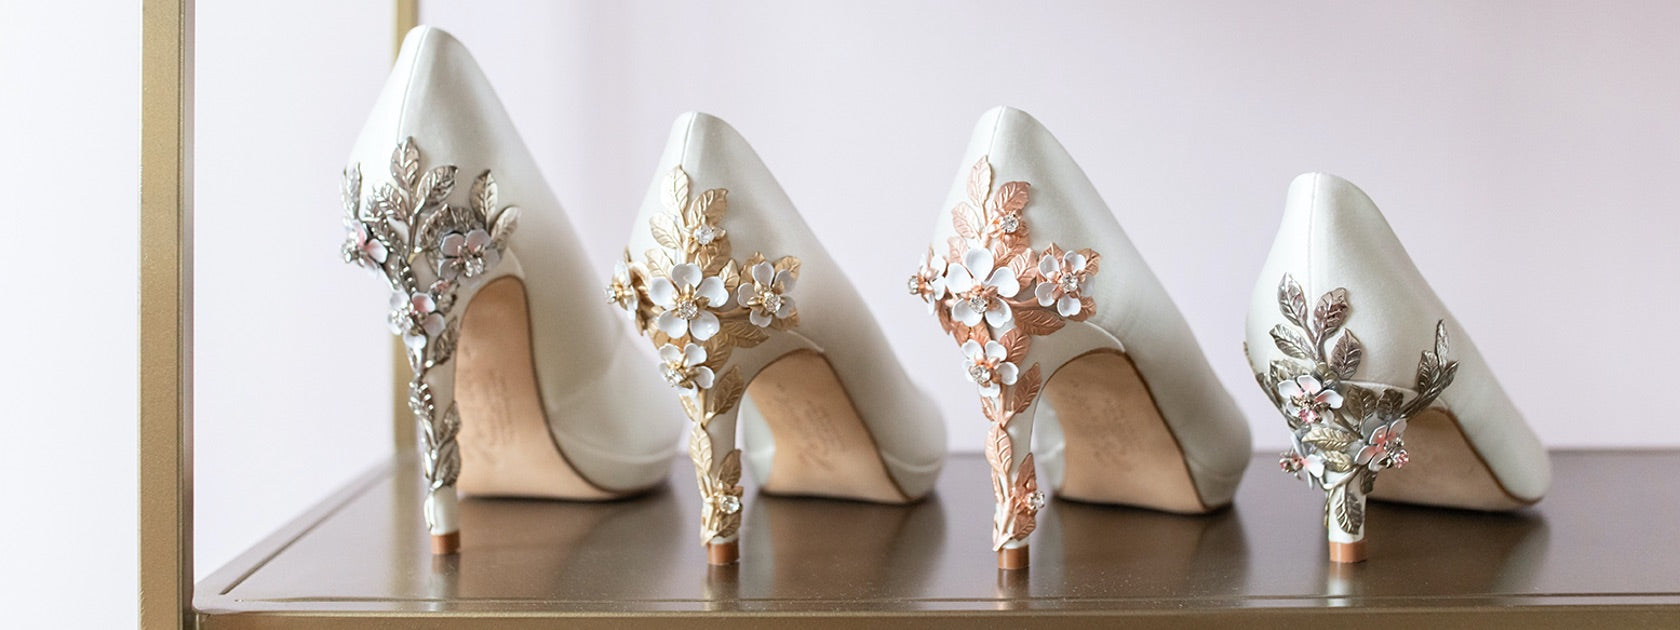 personalised wedding shoes uk